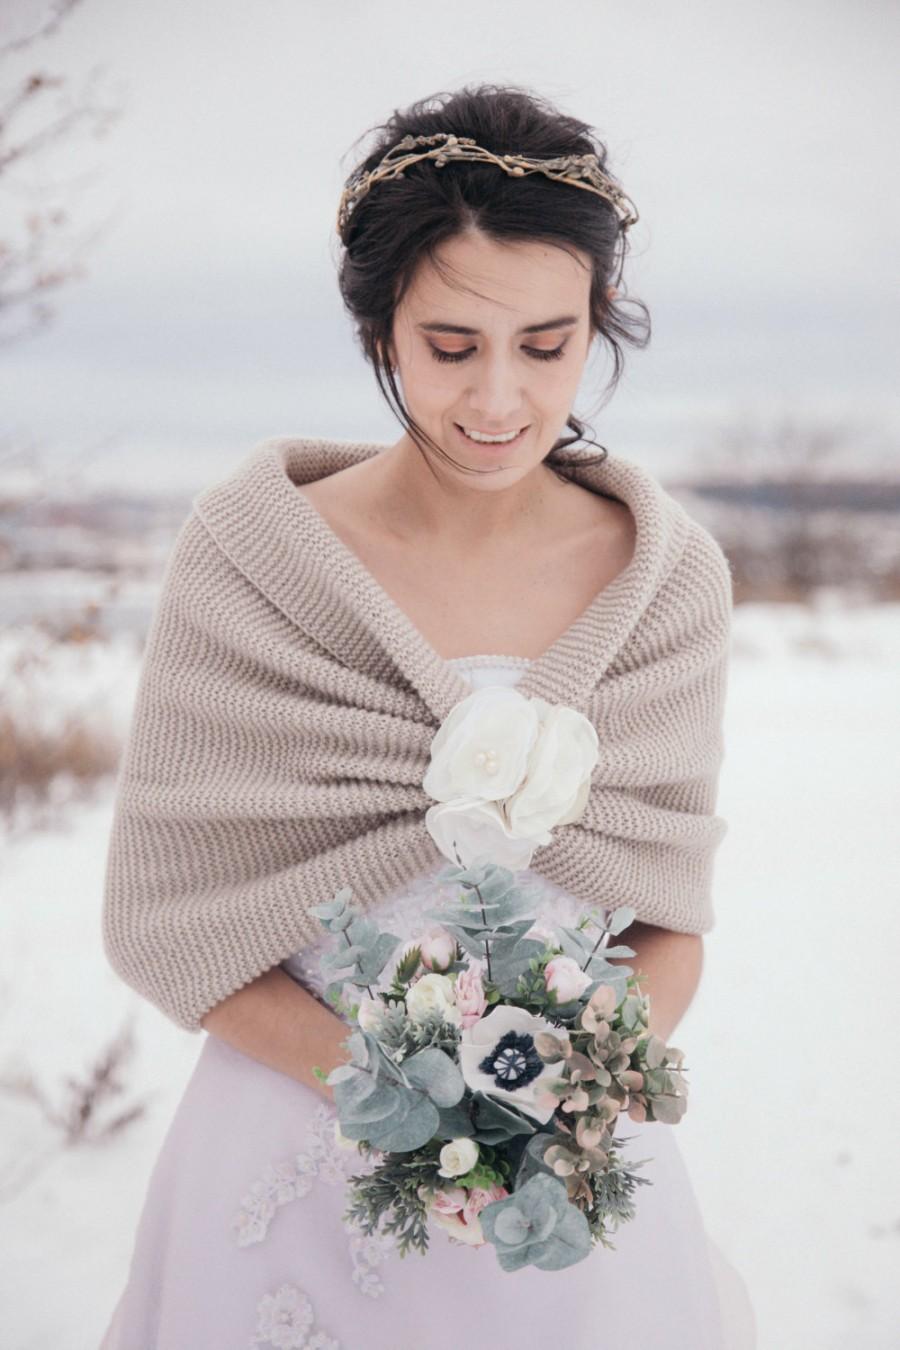 زفاف - Winter wedding, wedding shawl, bridal shawl, wedding accessories, bridal accessories, bridesmaid gift, accessories, knitted shawl, handmade